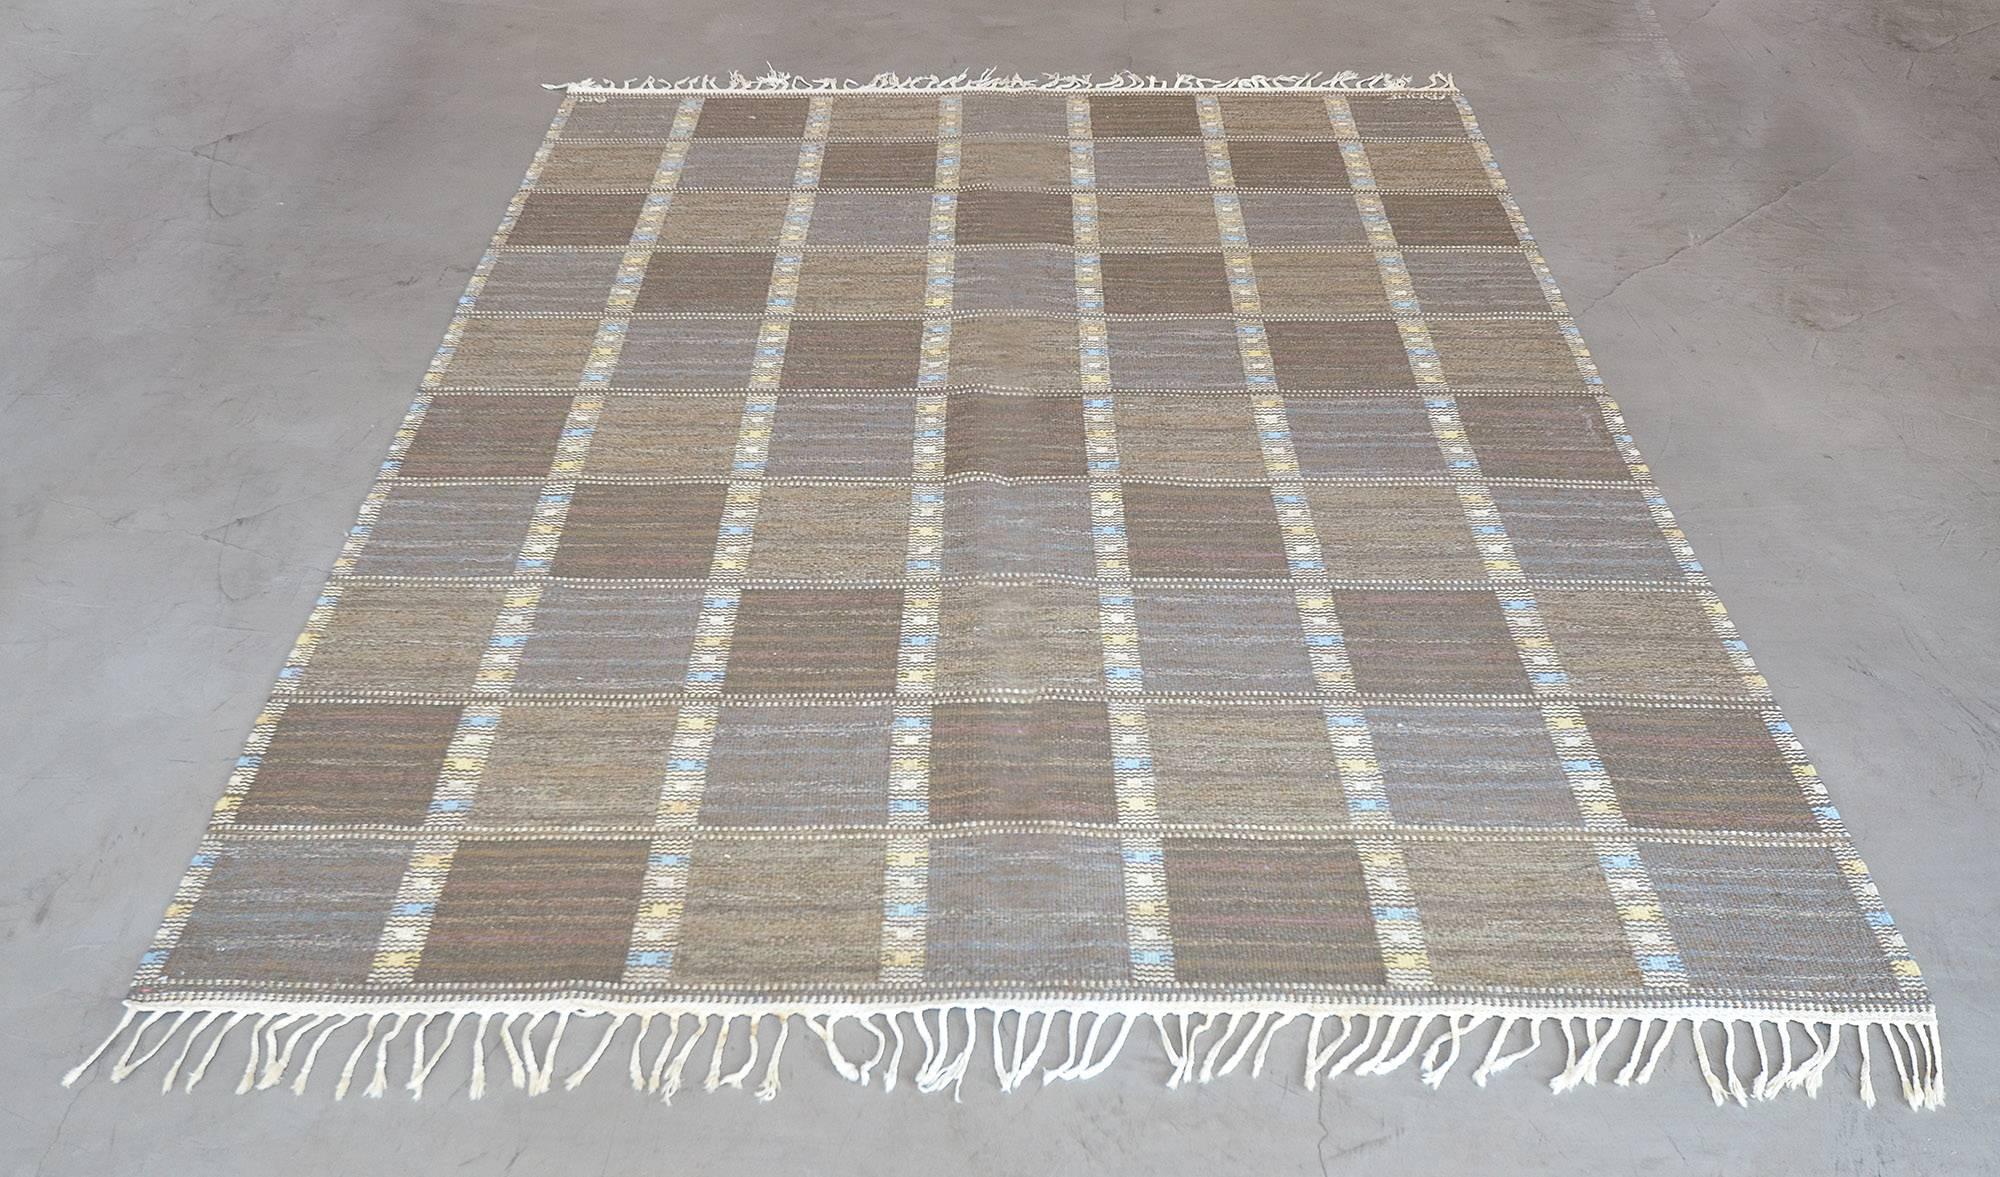 Dieser handgewebte schwedische Vintage-Teppich hat ein kariertes Gesamtfeld aus tonalen taupefarbenen diagonalen Reihen, die durch Stammesstreifen getrennt sind. Signiert vom Original-Künstler und der Werkstatt.

Über den Meisterweber:
Das